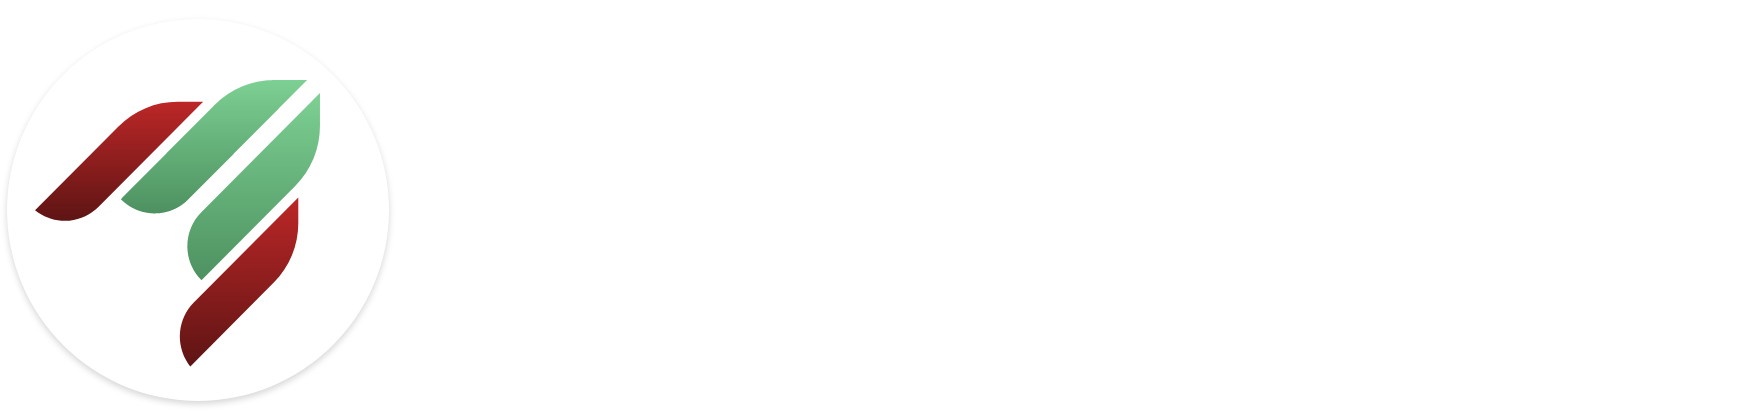 prdt logo